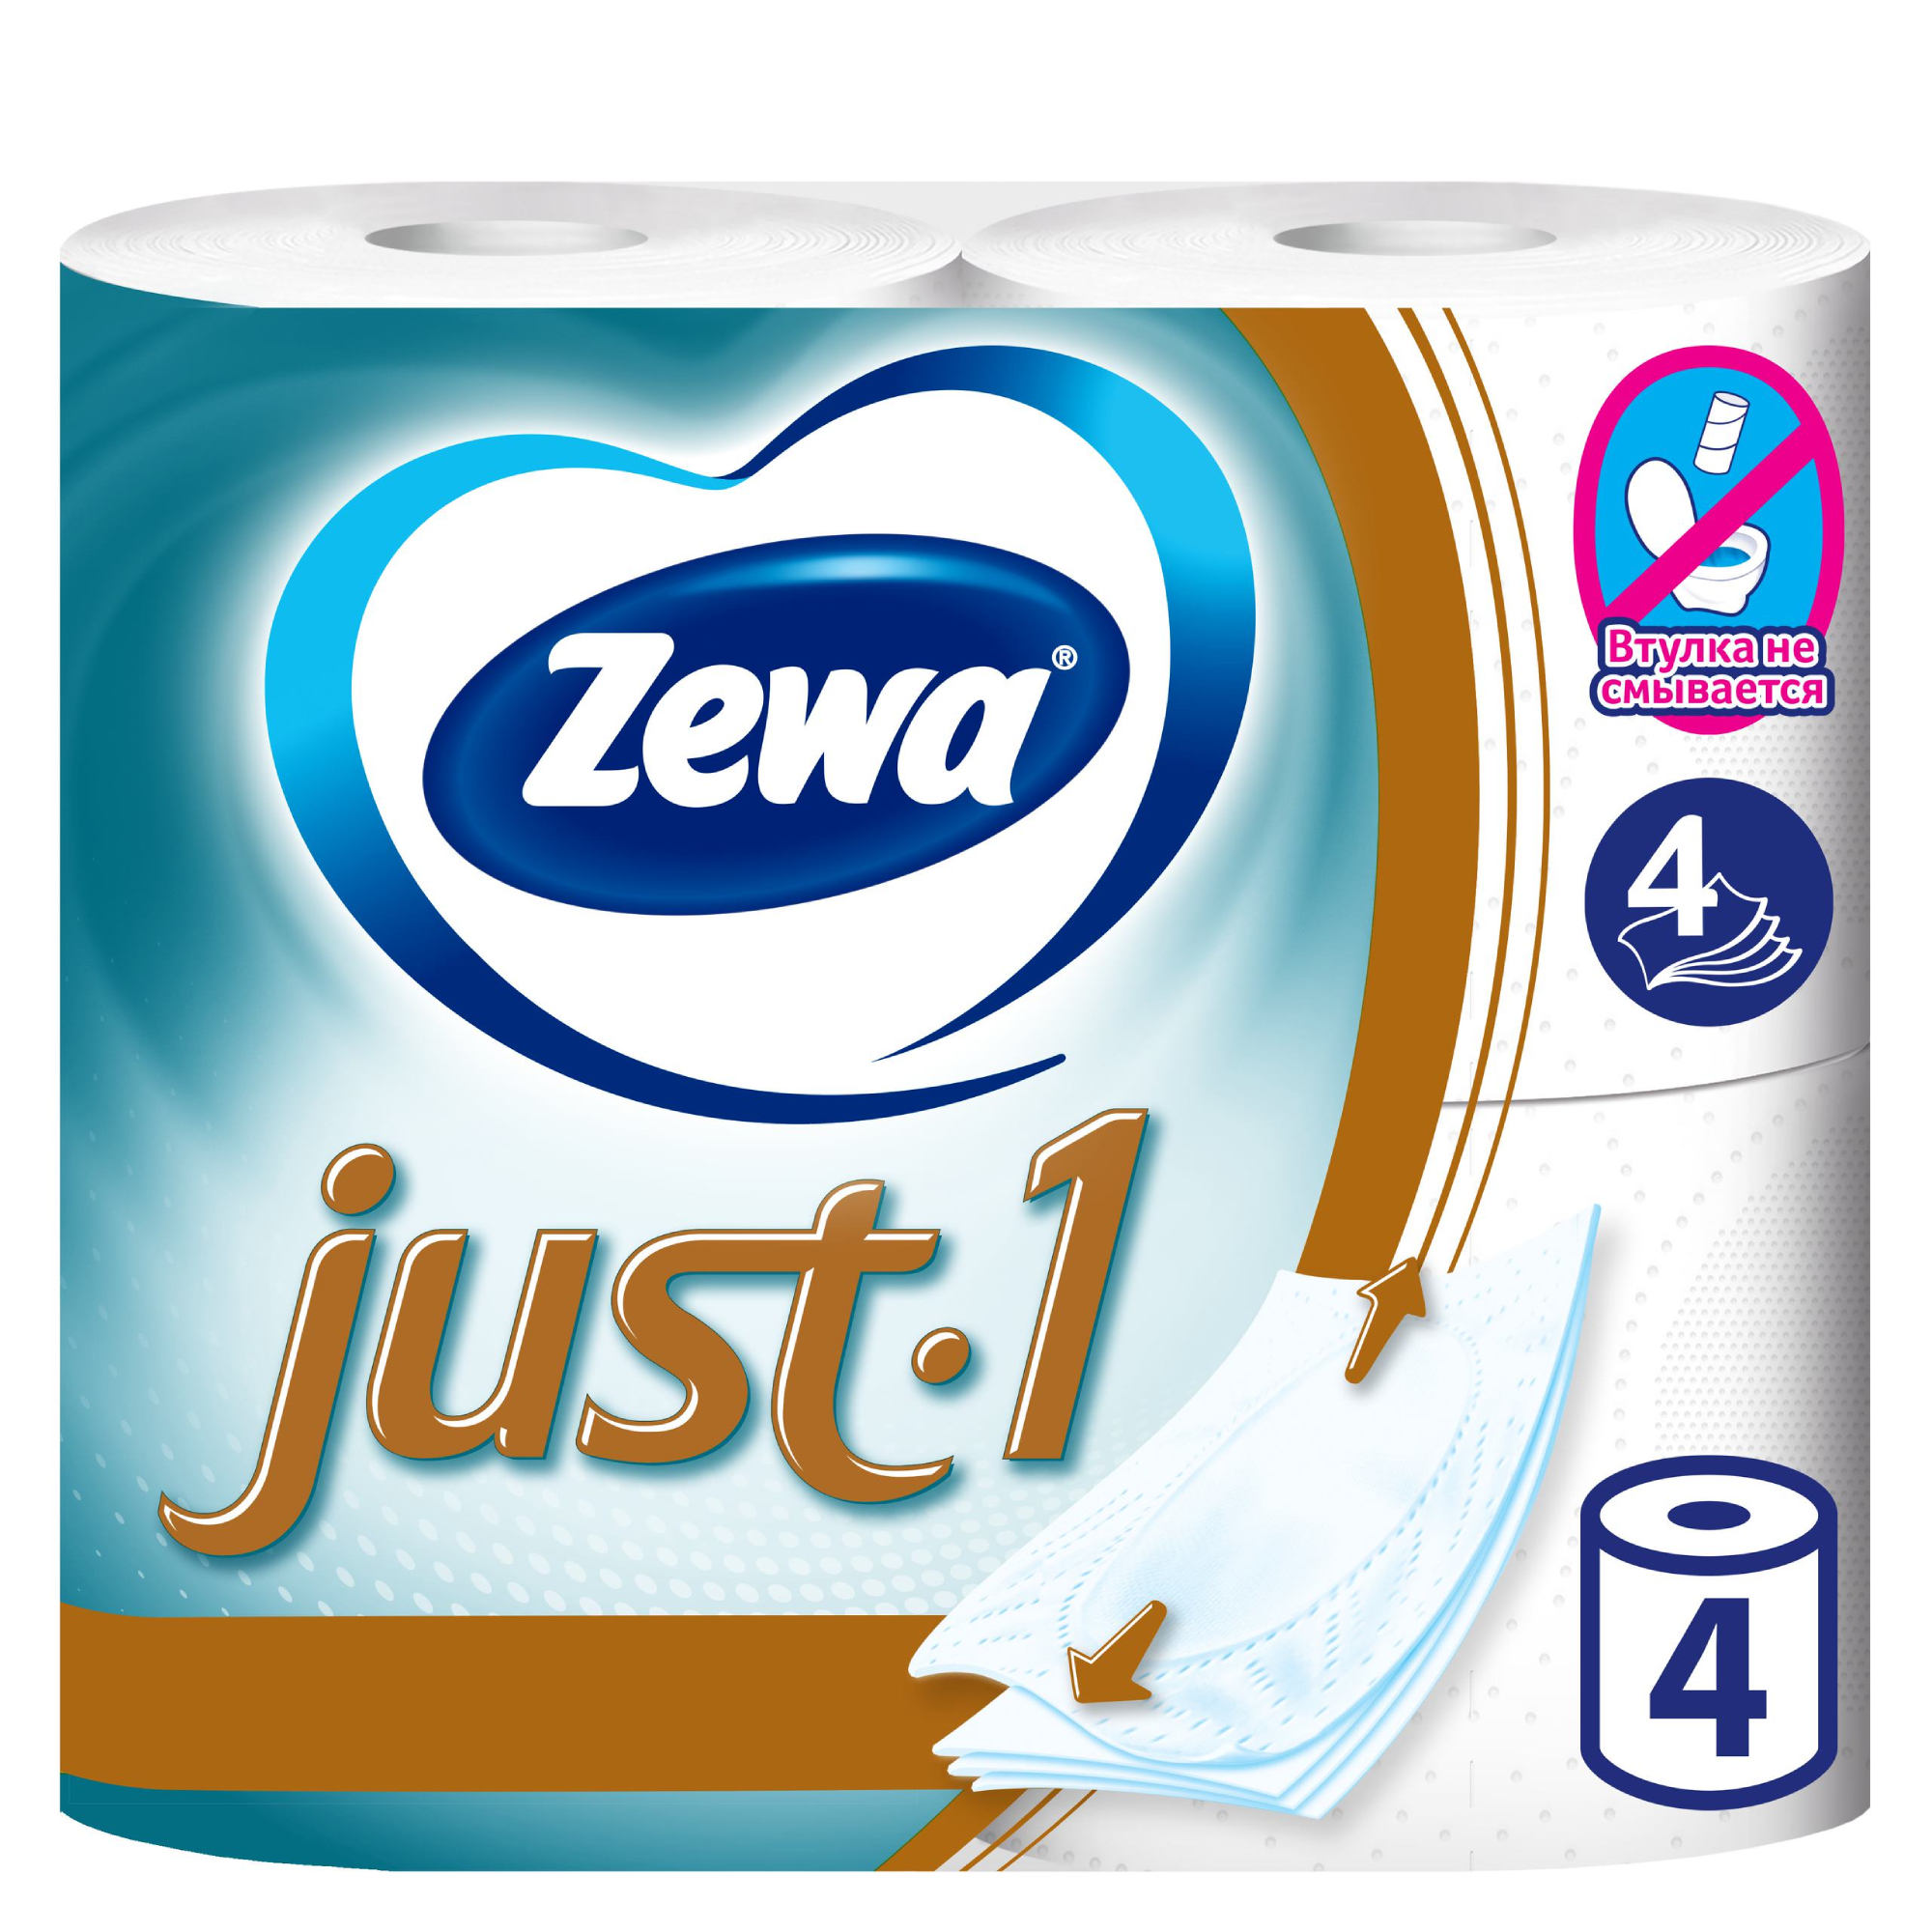 Туалетная бумага Zewa Just 1, 4 слоя, 4 рулона туалетная бумага zewa just 1 4 слоя 4 рулона